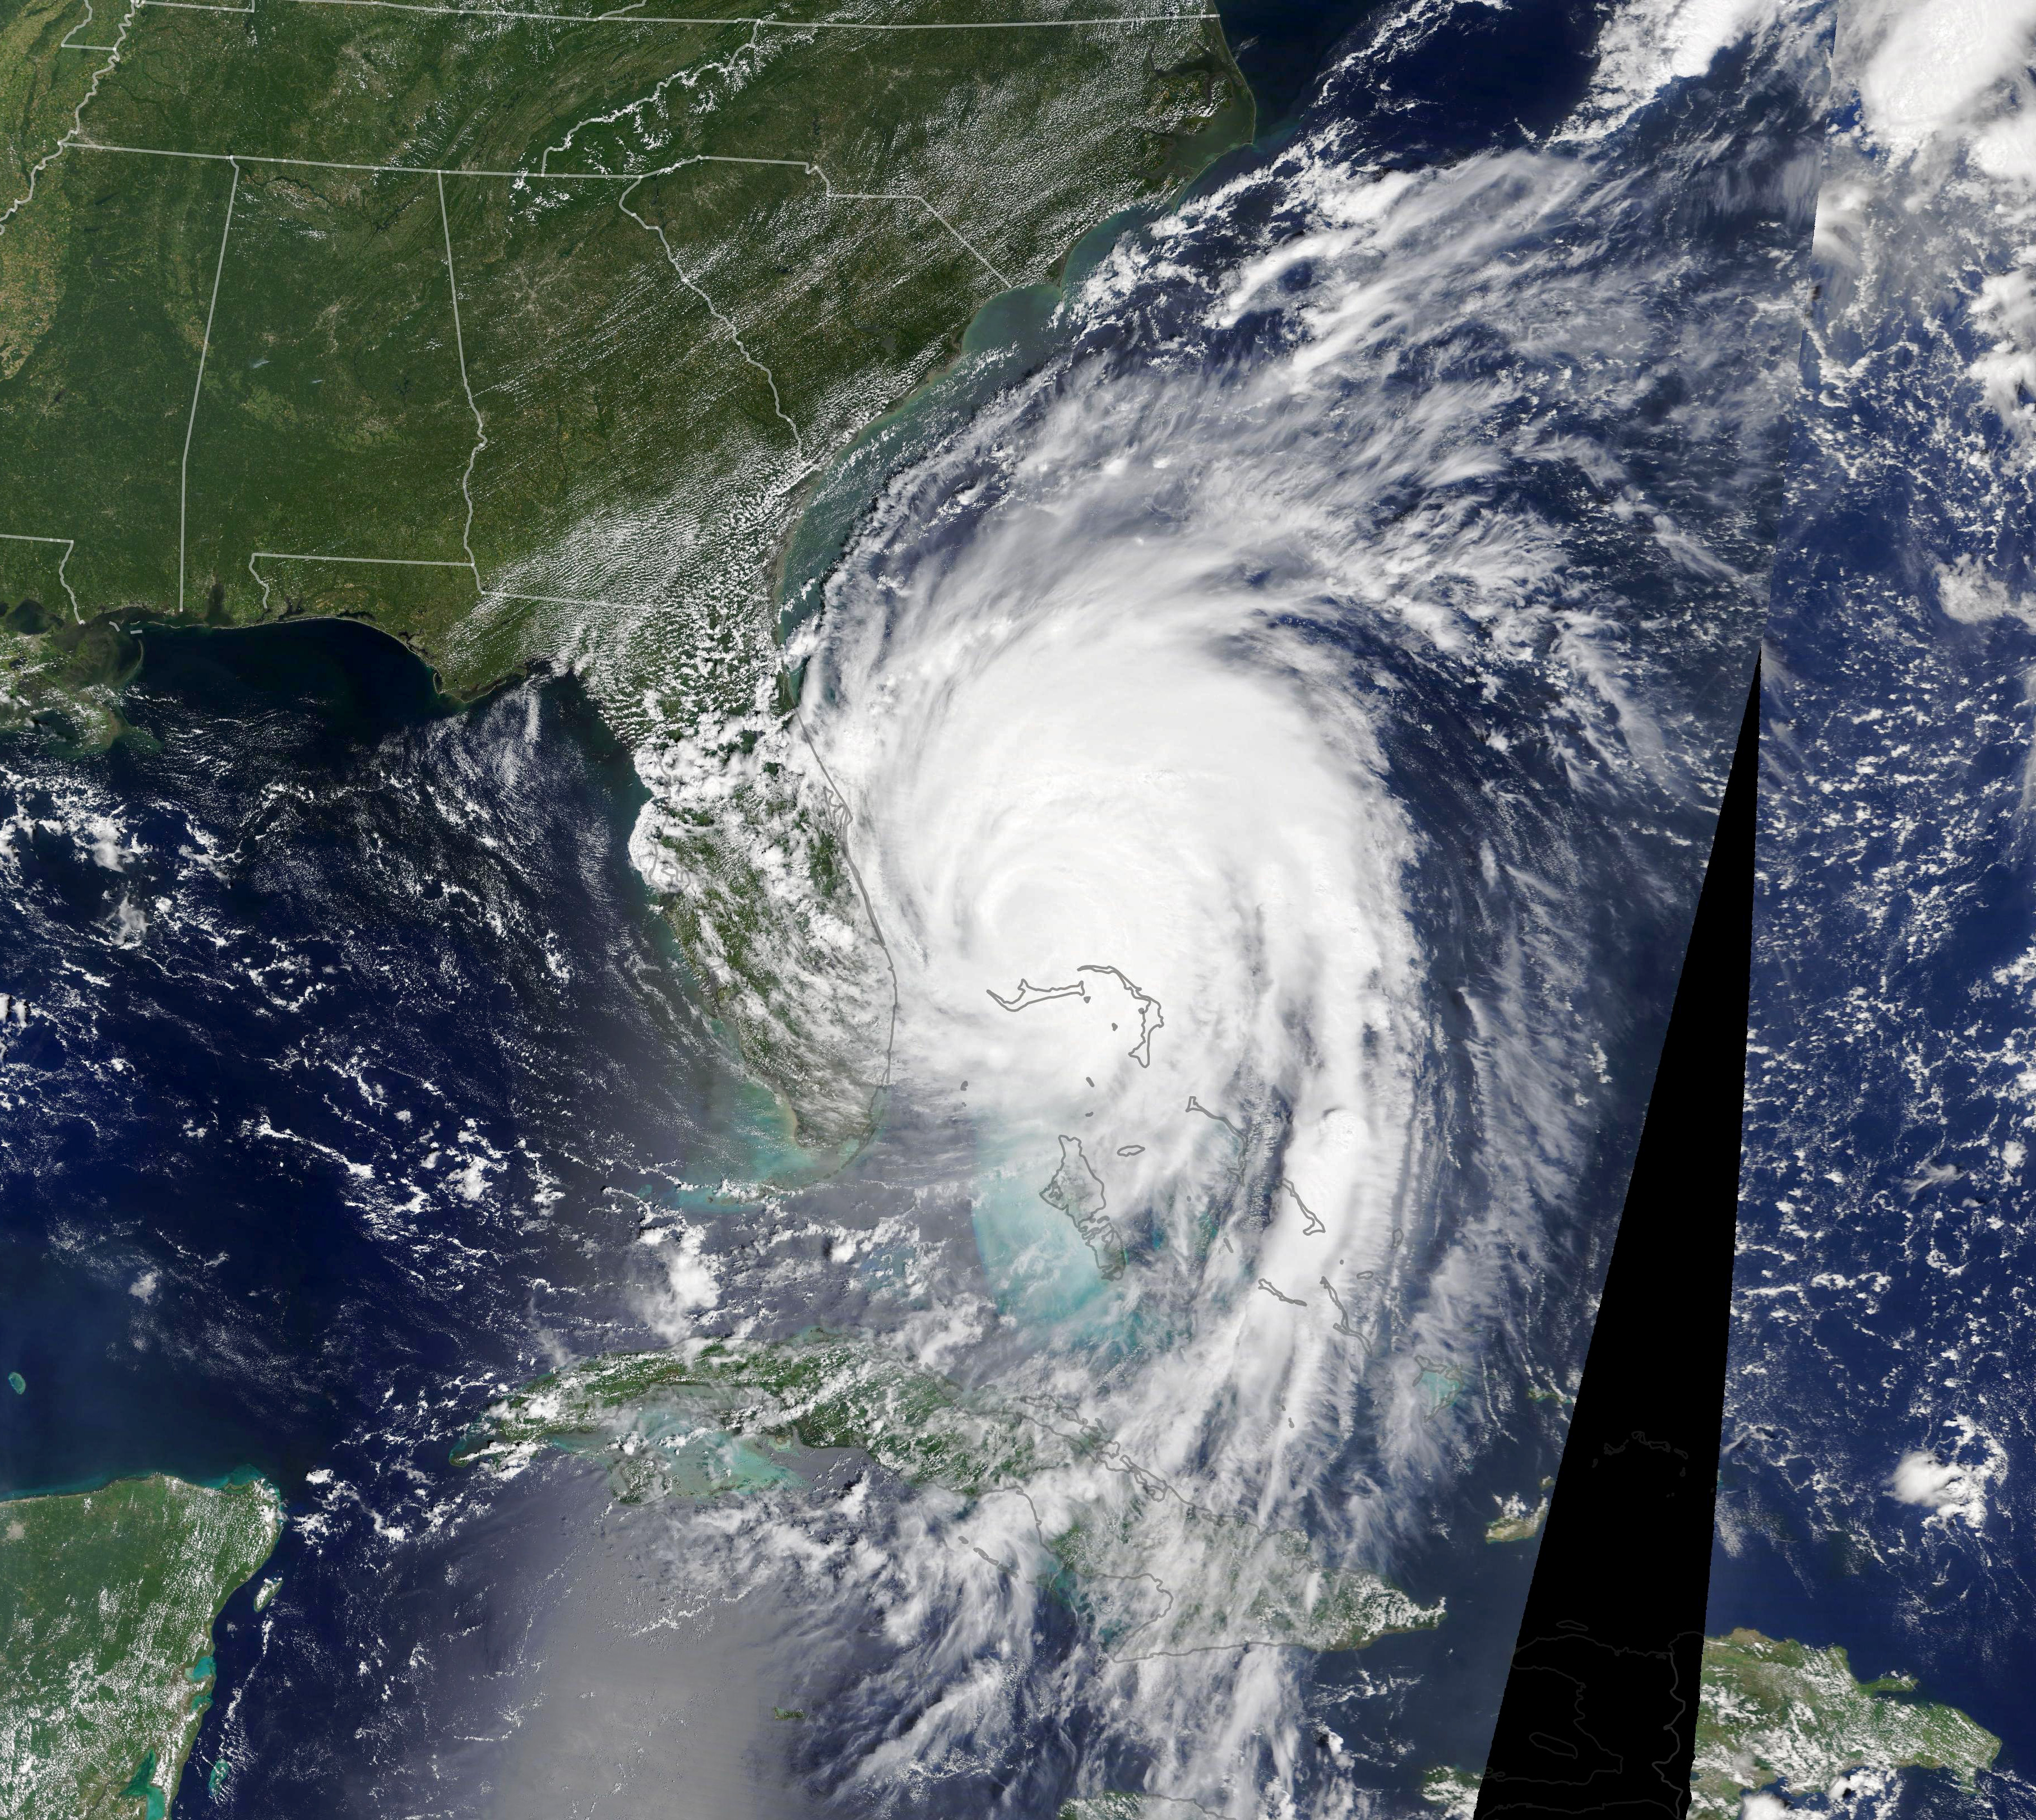 Après avoir dévasté les Bahamas, l’ouragan Dorian arrive à proximité de la Floride le 3 septembre 2019. © Nasa Earth Observatory